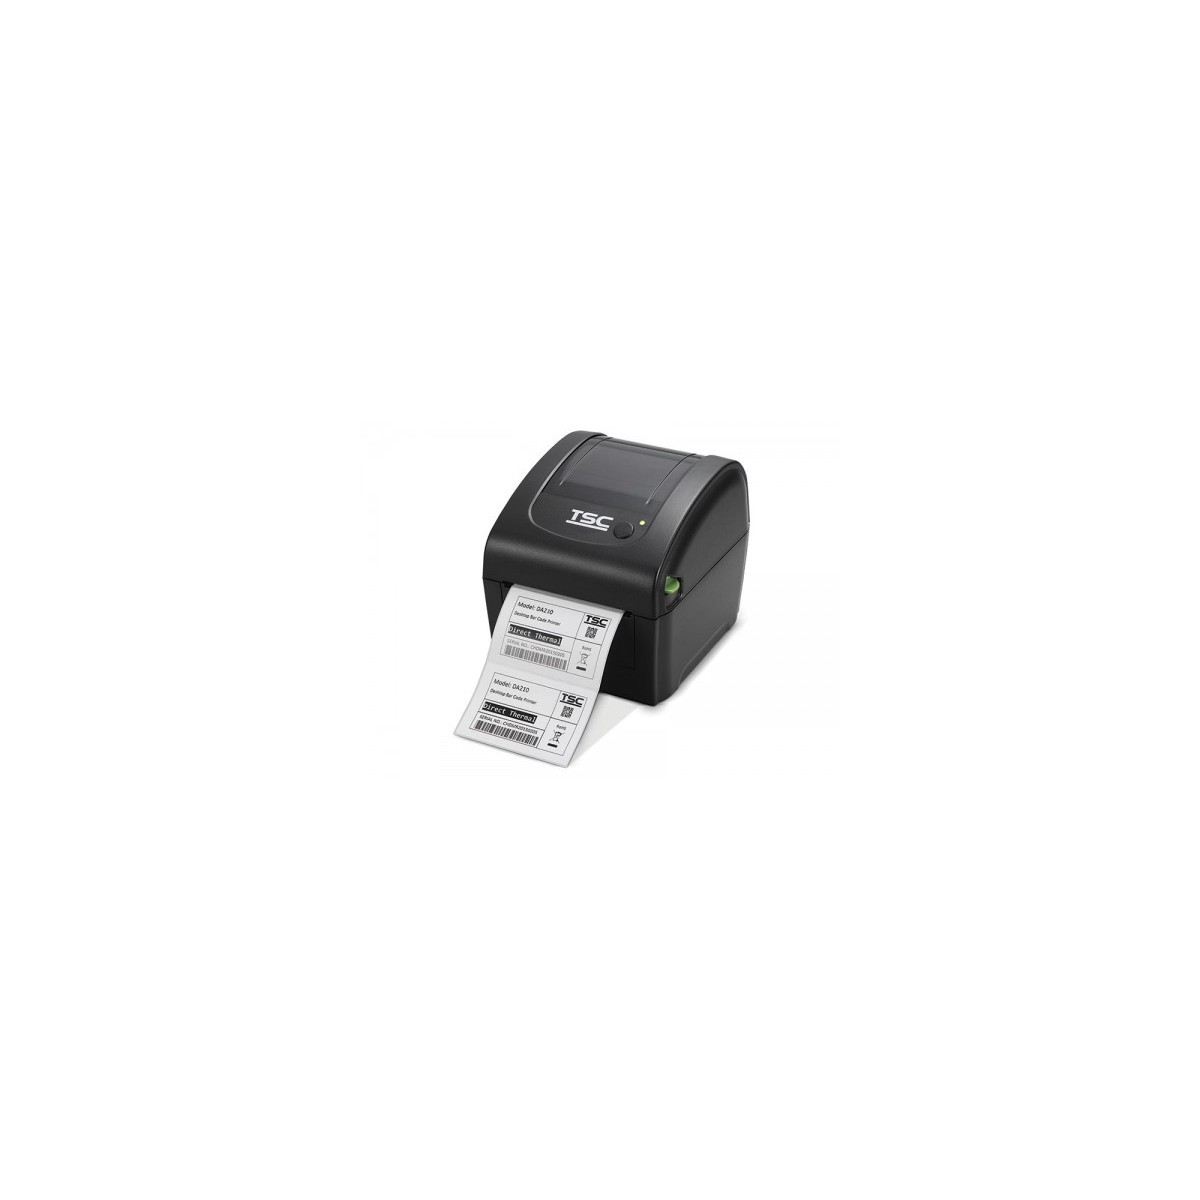 TSC DA220 (203dpi), RTC, USB, LAN - Label Printer - Label Printer